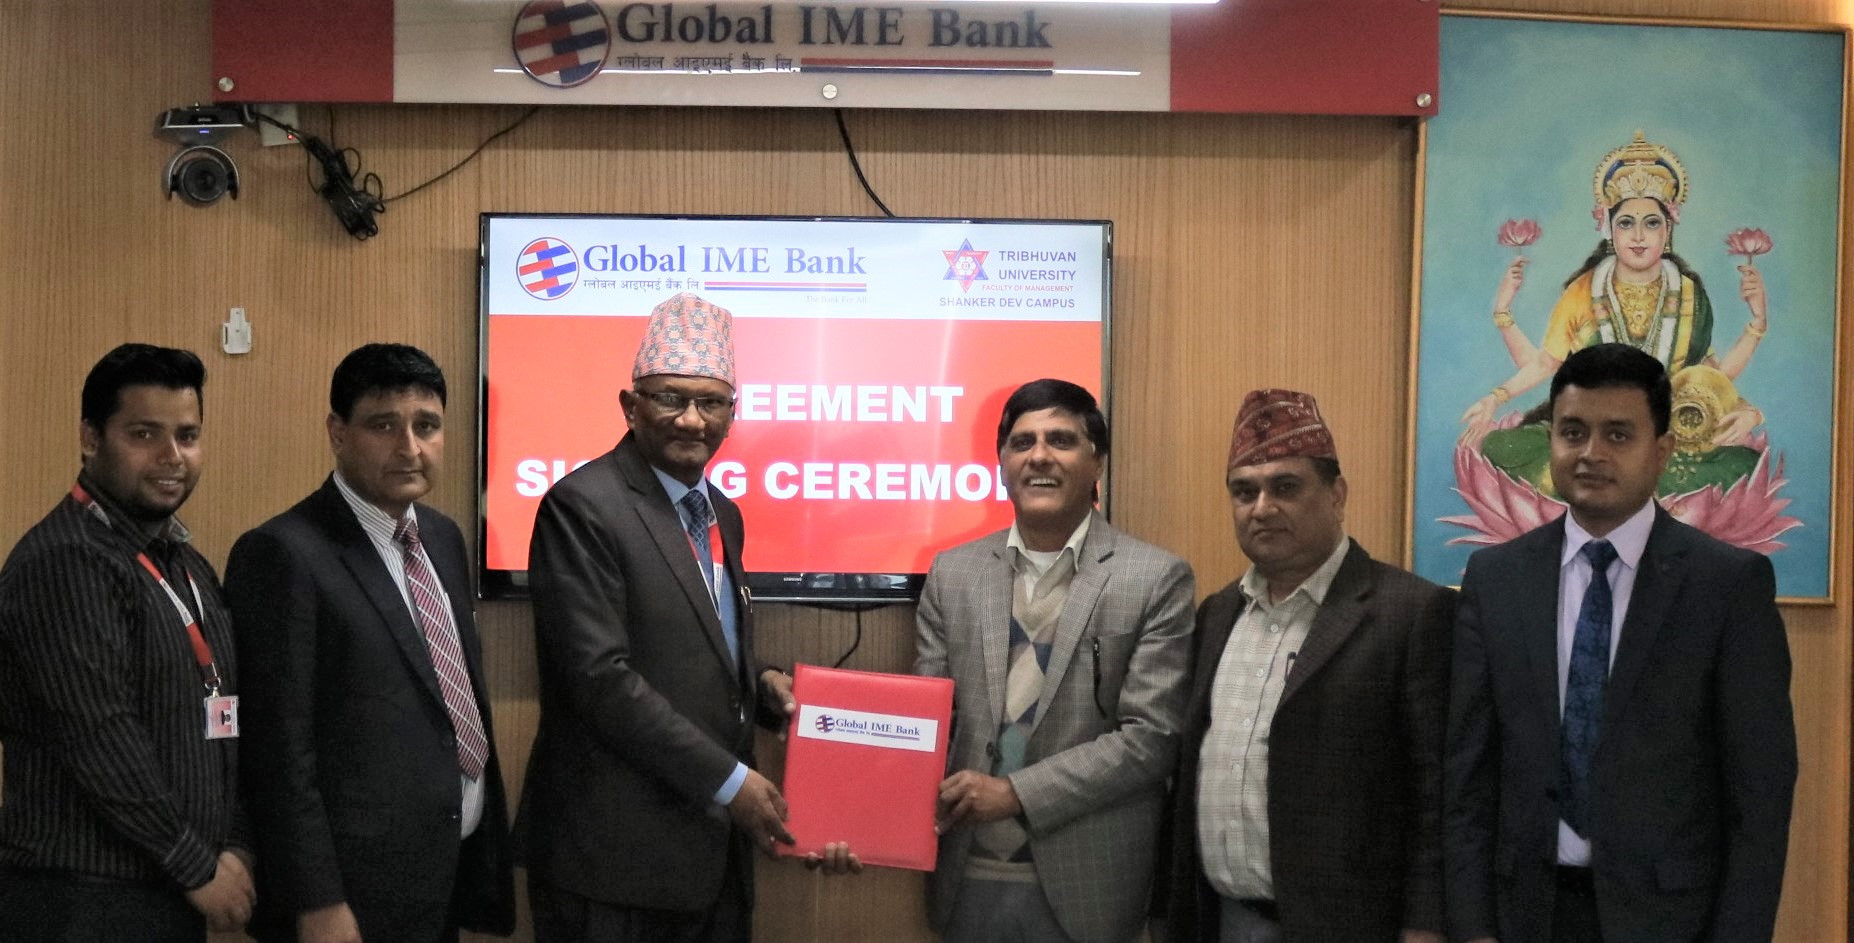 ग्लोबल आइएमई बैंकको डिजिटल माध्यमबाट शंकरदेव क्याम्पसको शुल्क भुक्तानी गर्न मिल्ने